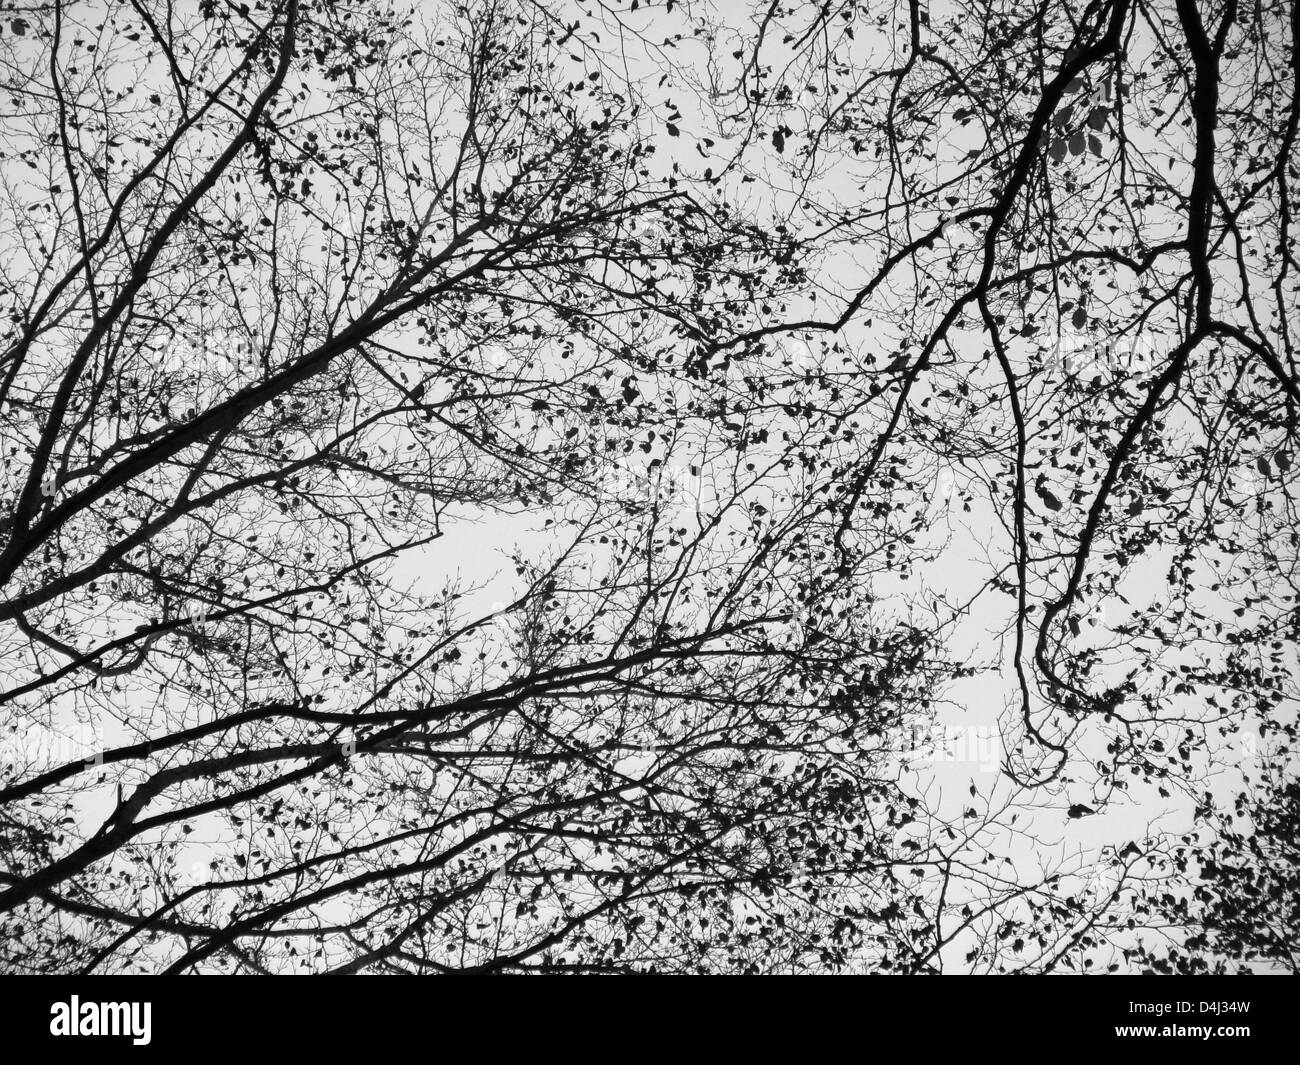 Immagine astratta che mostra alcuni Tree Tops con ramoscelli nel cielo, in scala di grigi Foto Stock